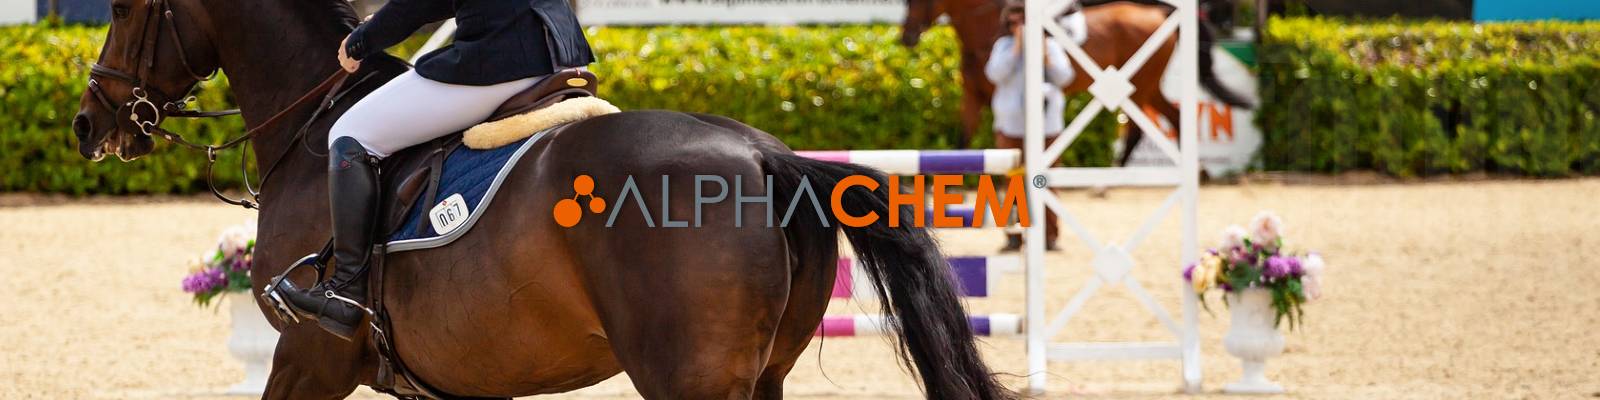 laboratorio alphachem medicamentos para caballos